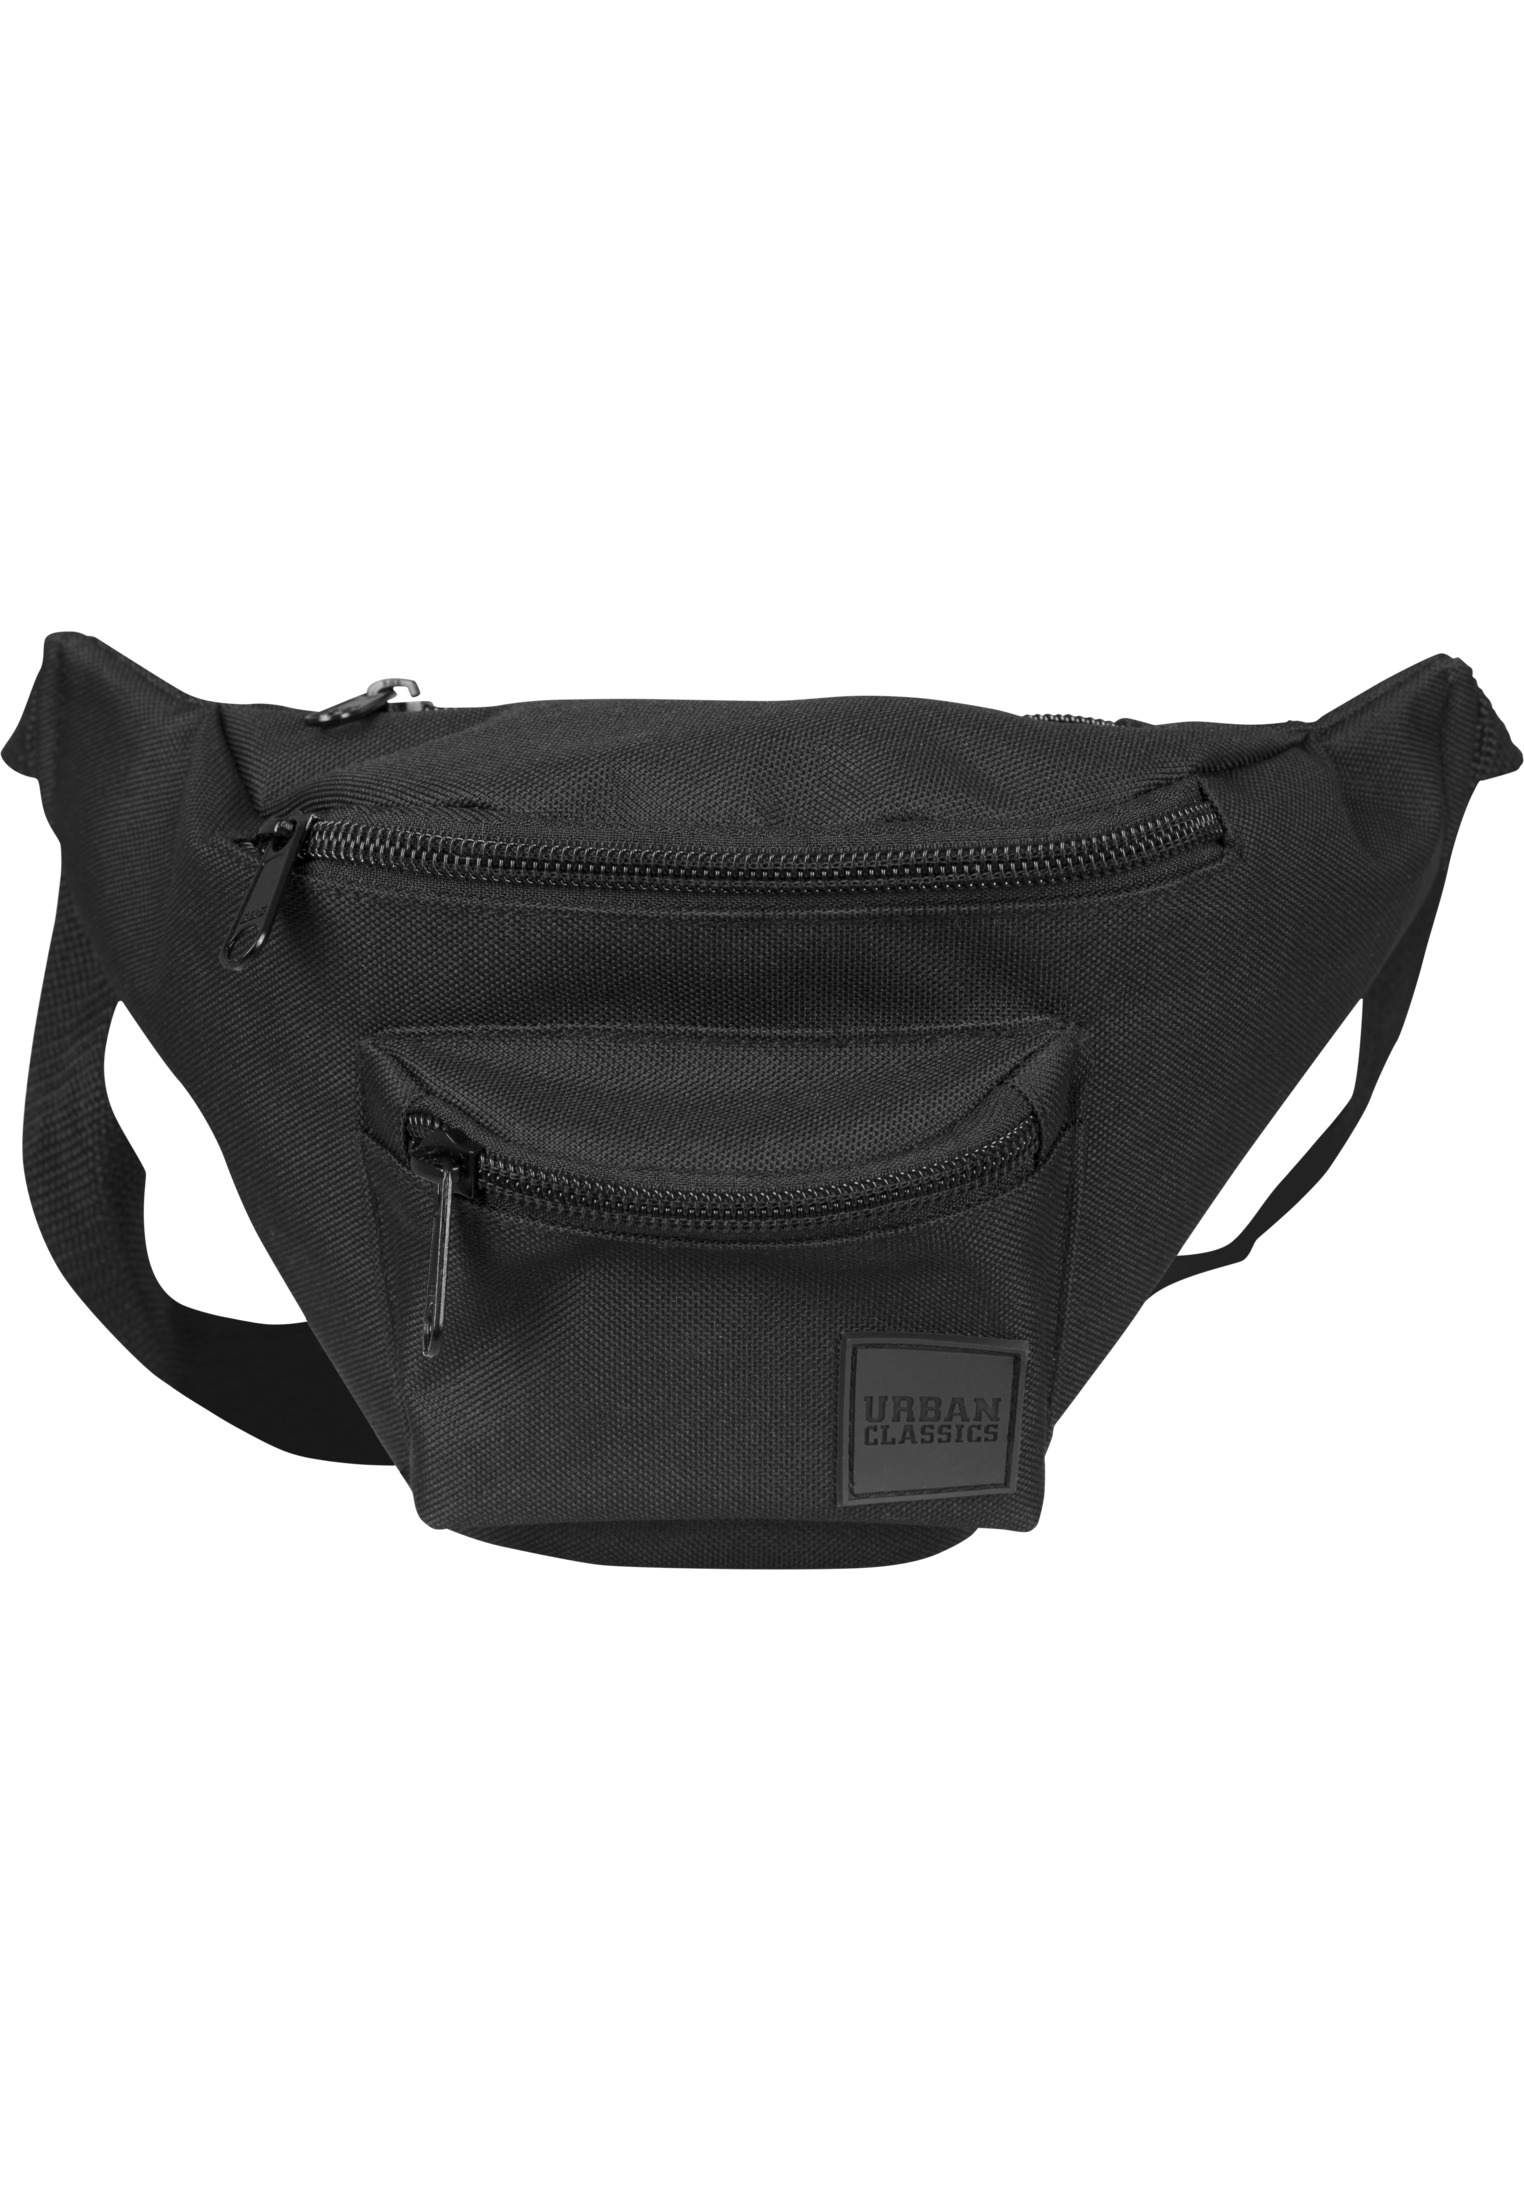 Taschen Triple-Zip Hip Bag in Farbe blk/blk